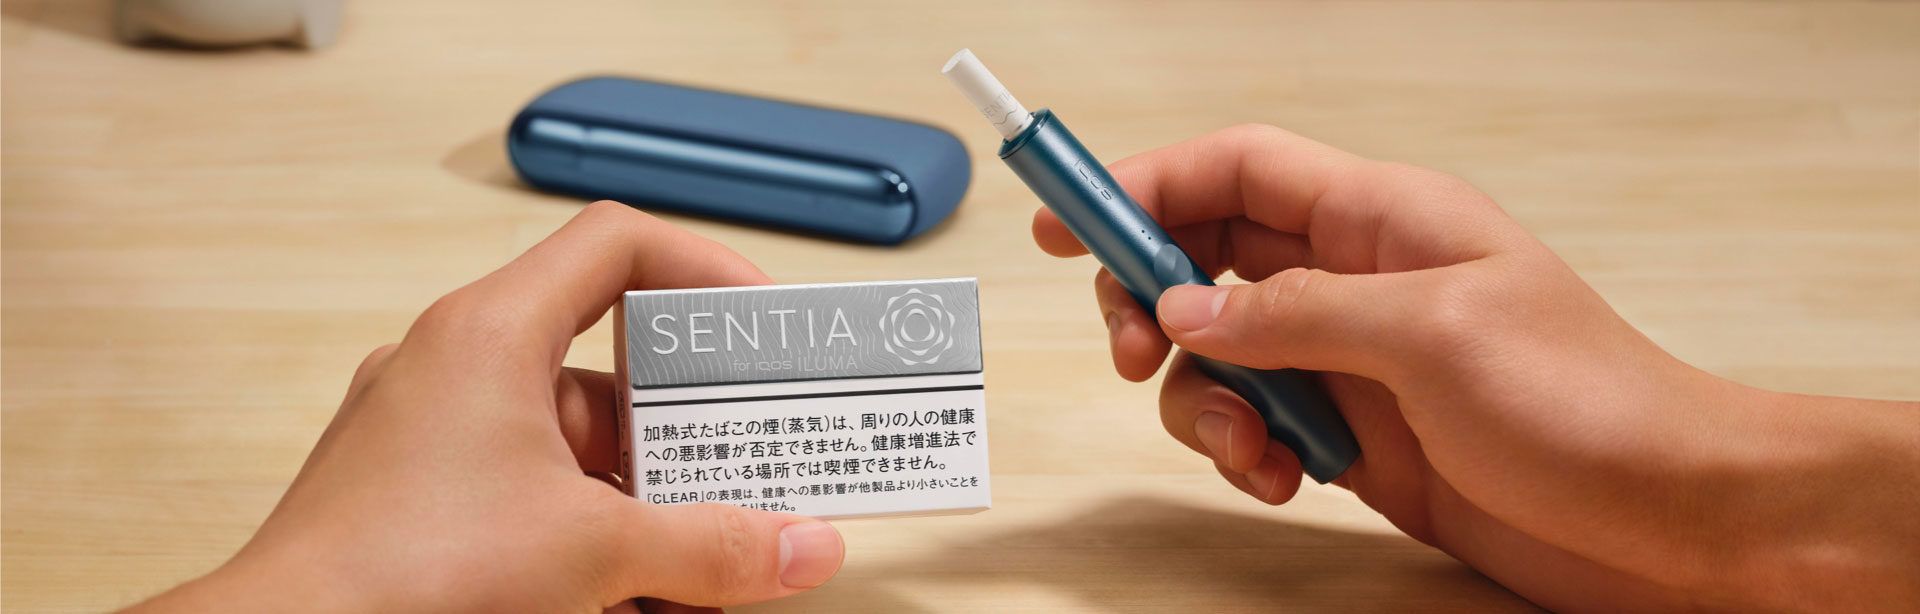 新しいIQOS イルマ専用たばこ 「センティア」の全国販売が開始